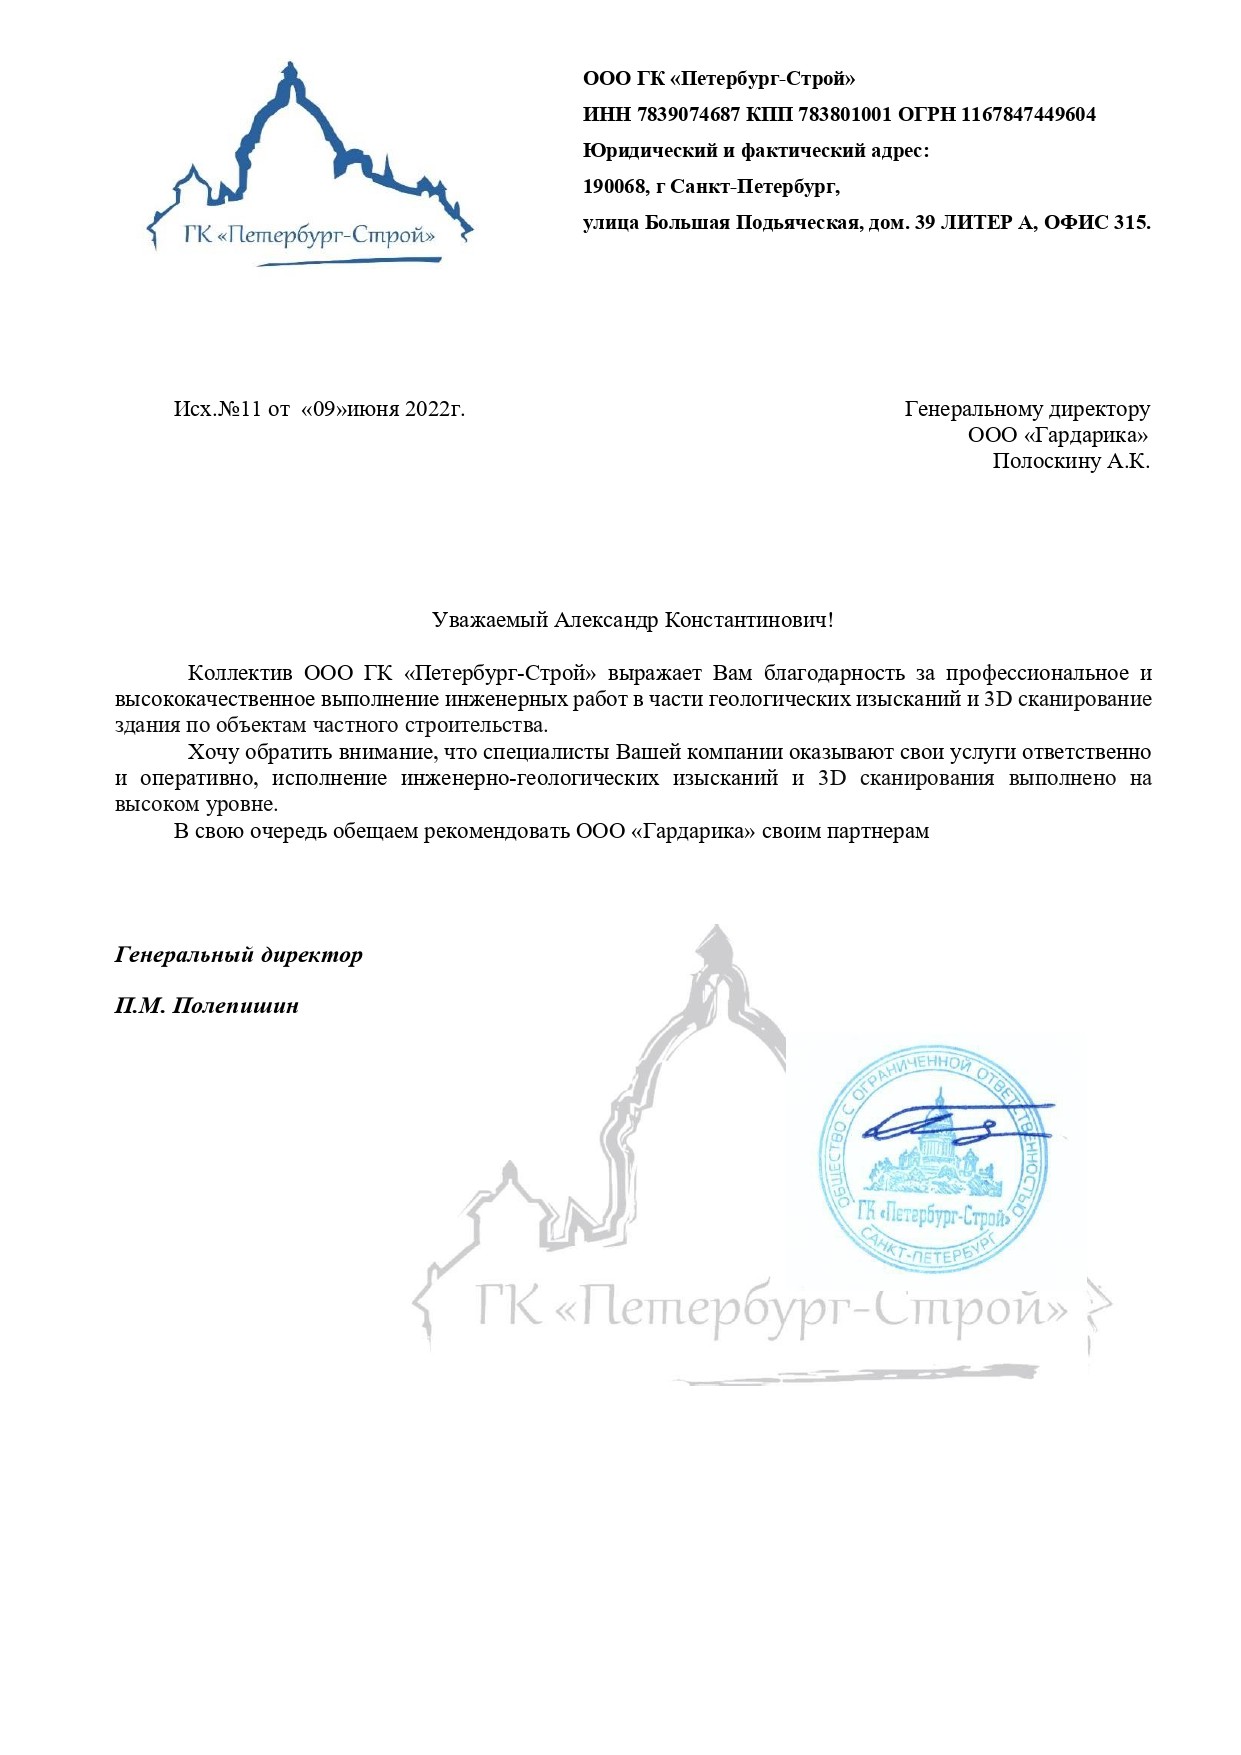 Благодарственное письмо от ГК Петербург Строй